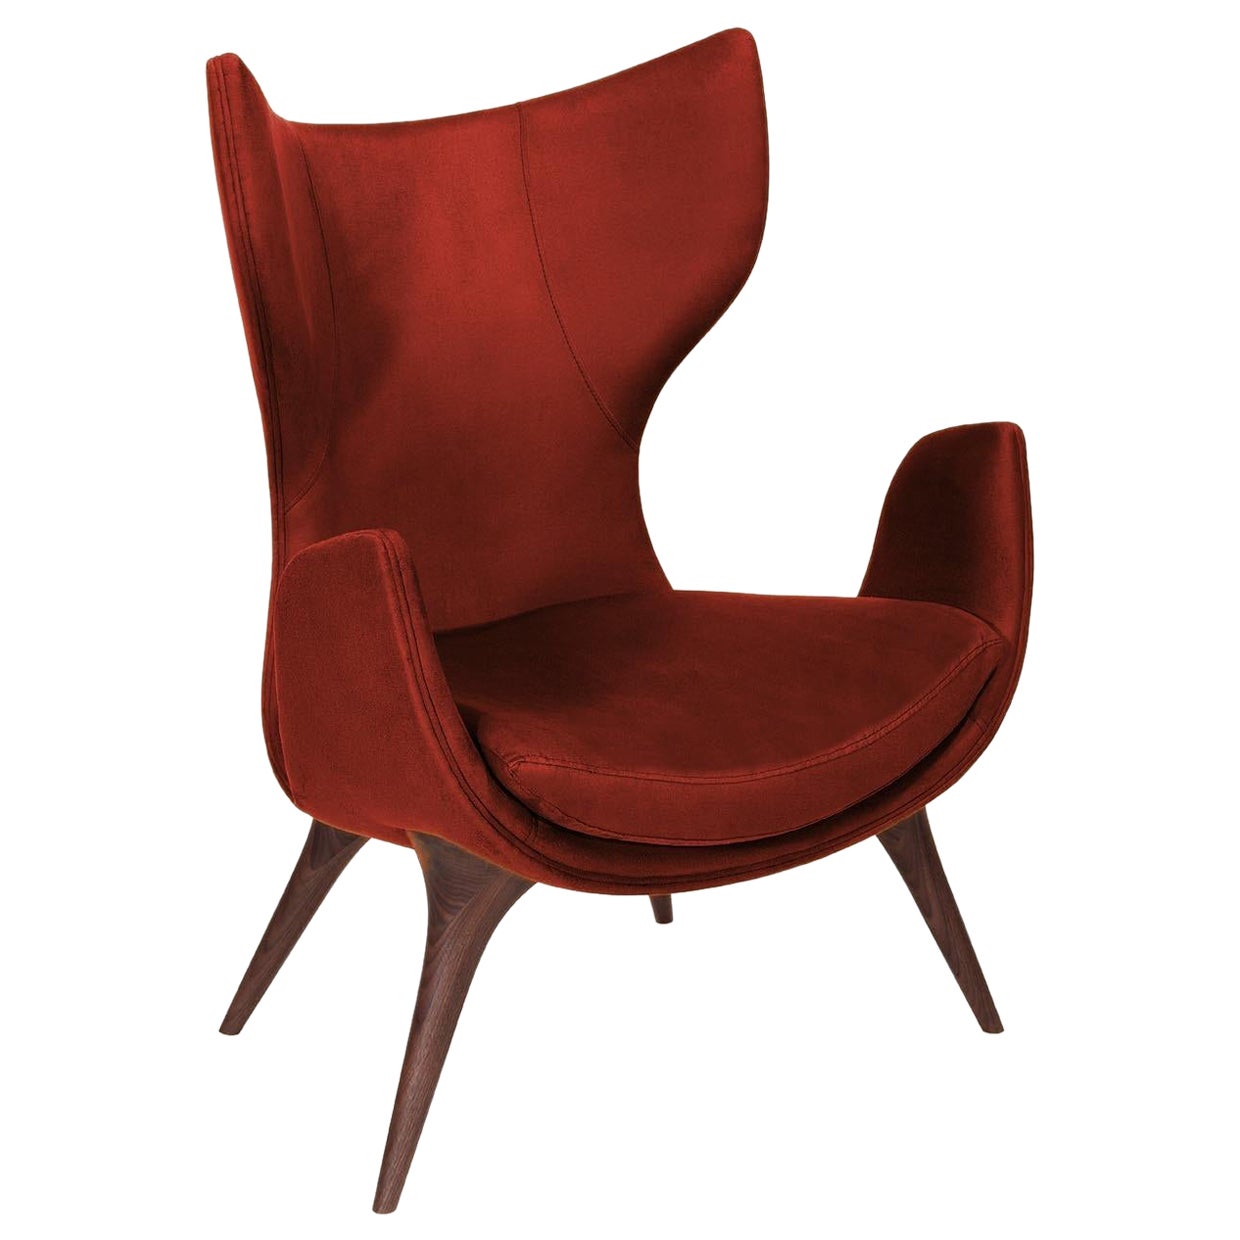 Fauteuil Korcula de Wonatti, fauteuil en bois de noyer, fauteuil en daim, chaise rouge